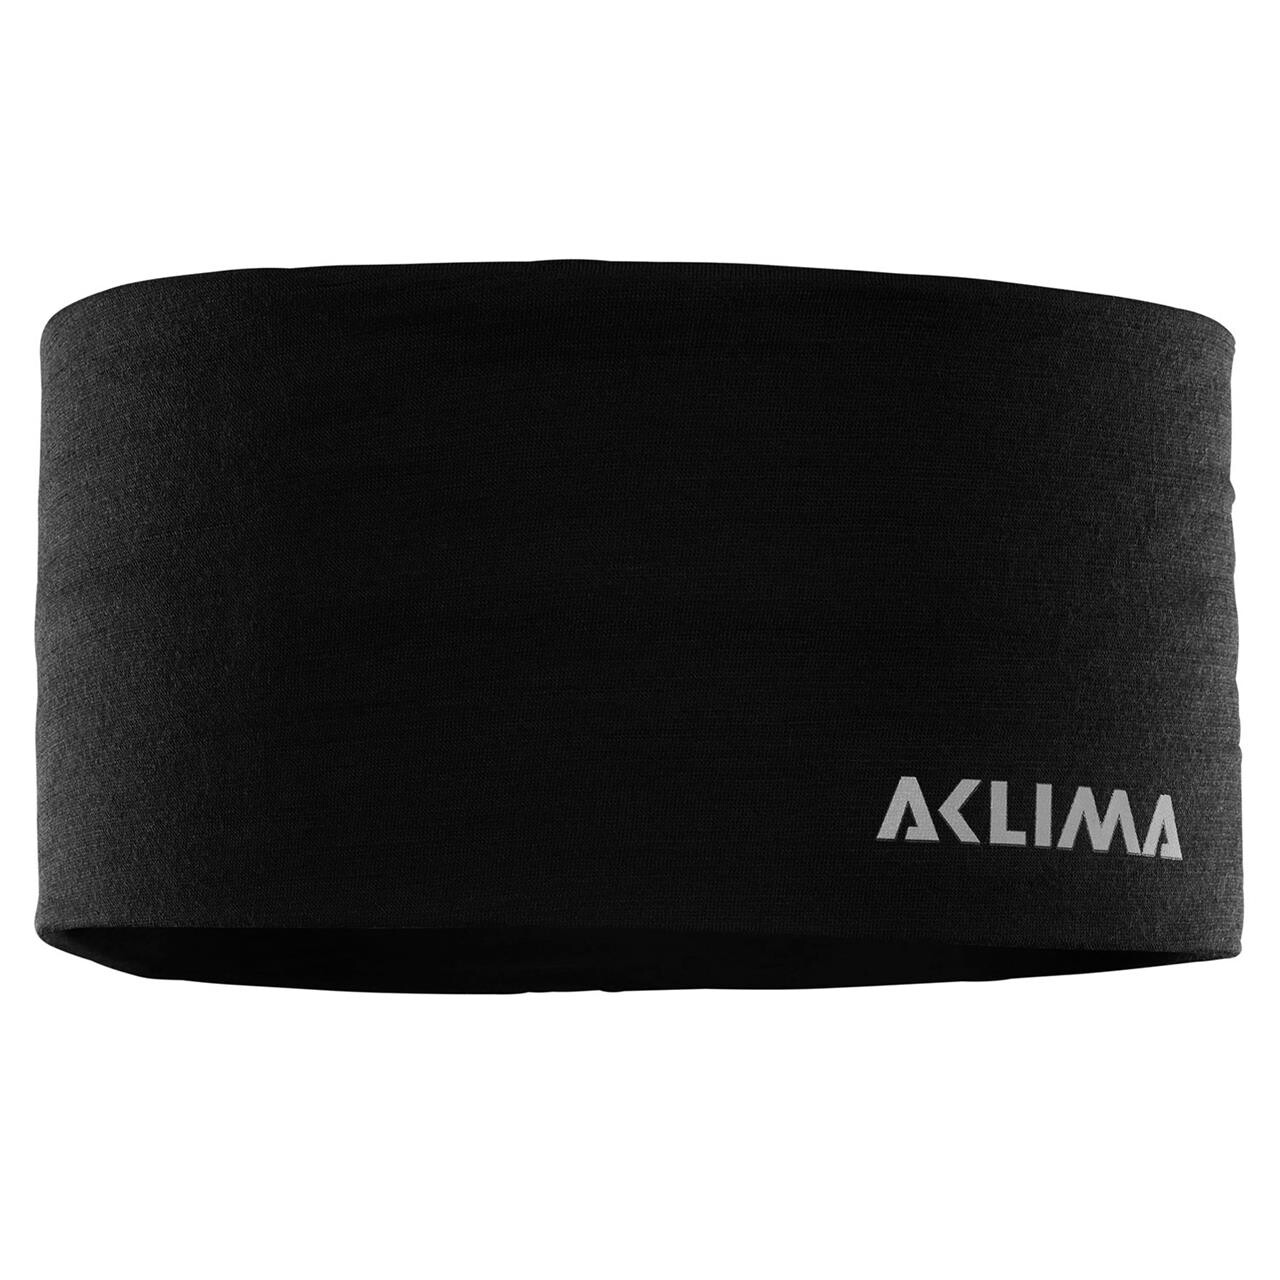 Se Aclima Lightwool Headband / pandebånd, jet black-L - Pandebånd hos Friluftsland.dk